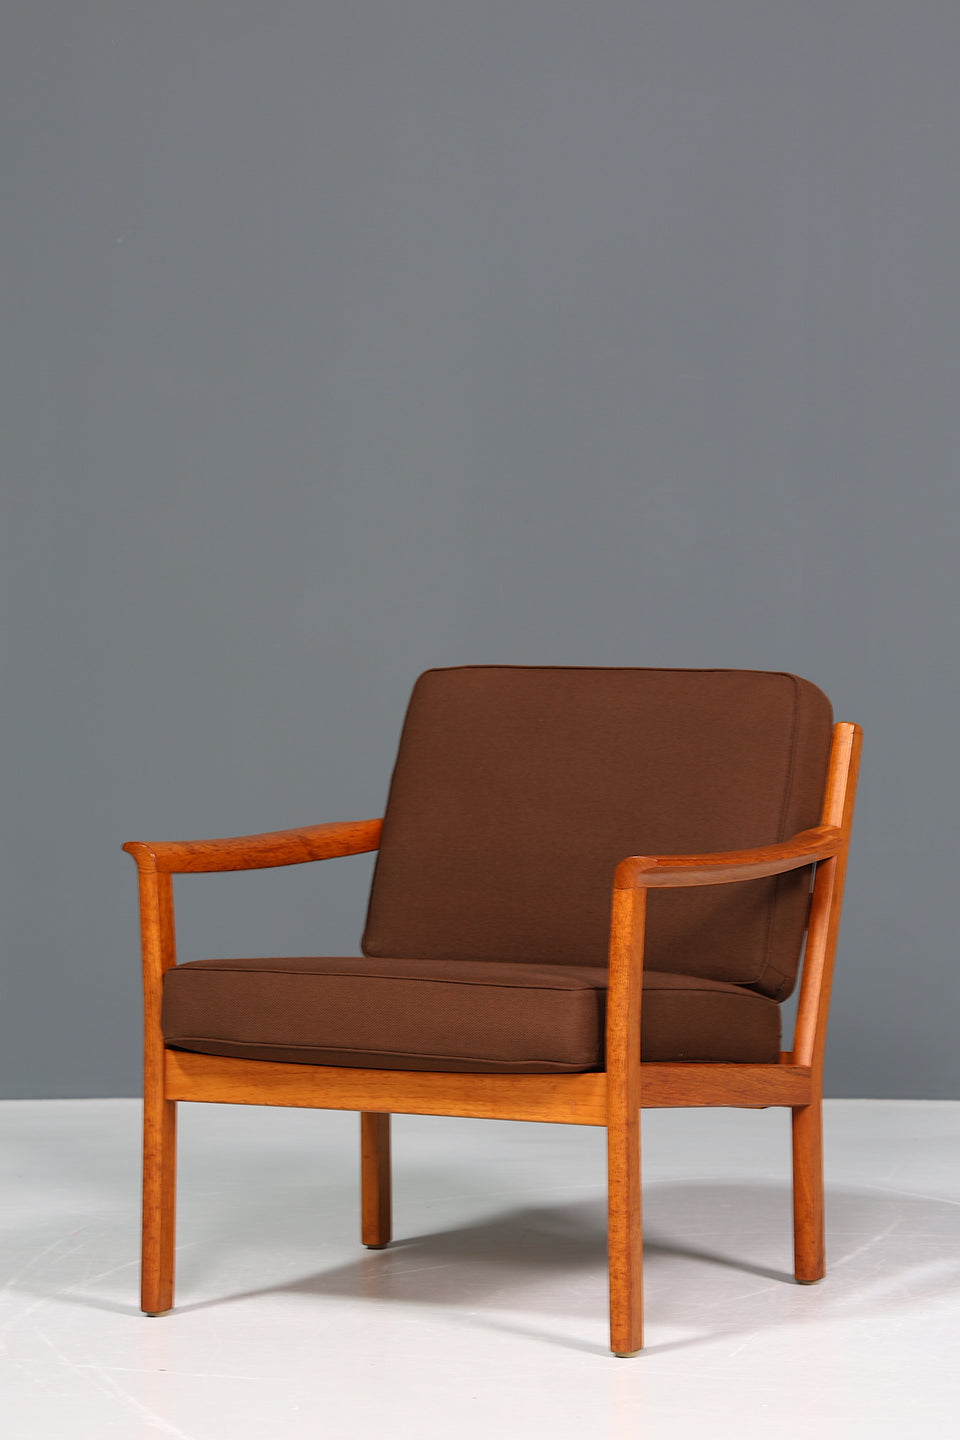 Wunderschöner Mid Century Sessel "Made in Denmark" Teak Holz Armlehnsessel 60s